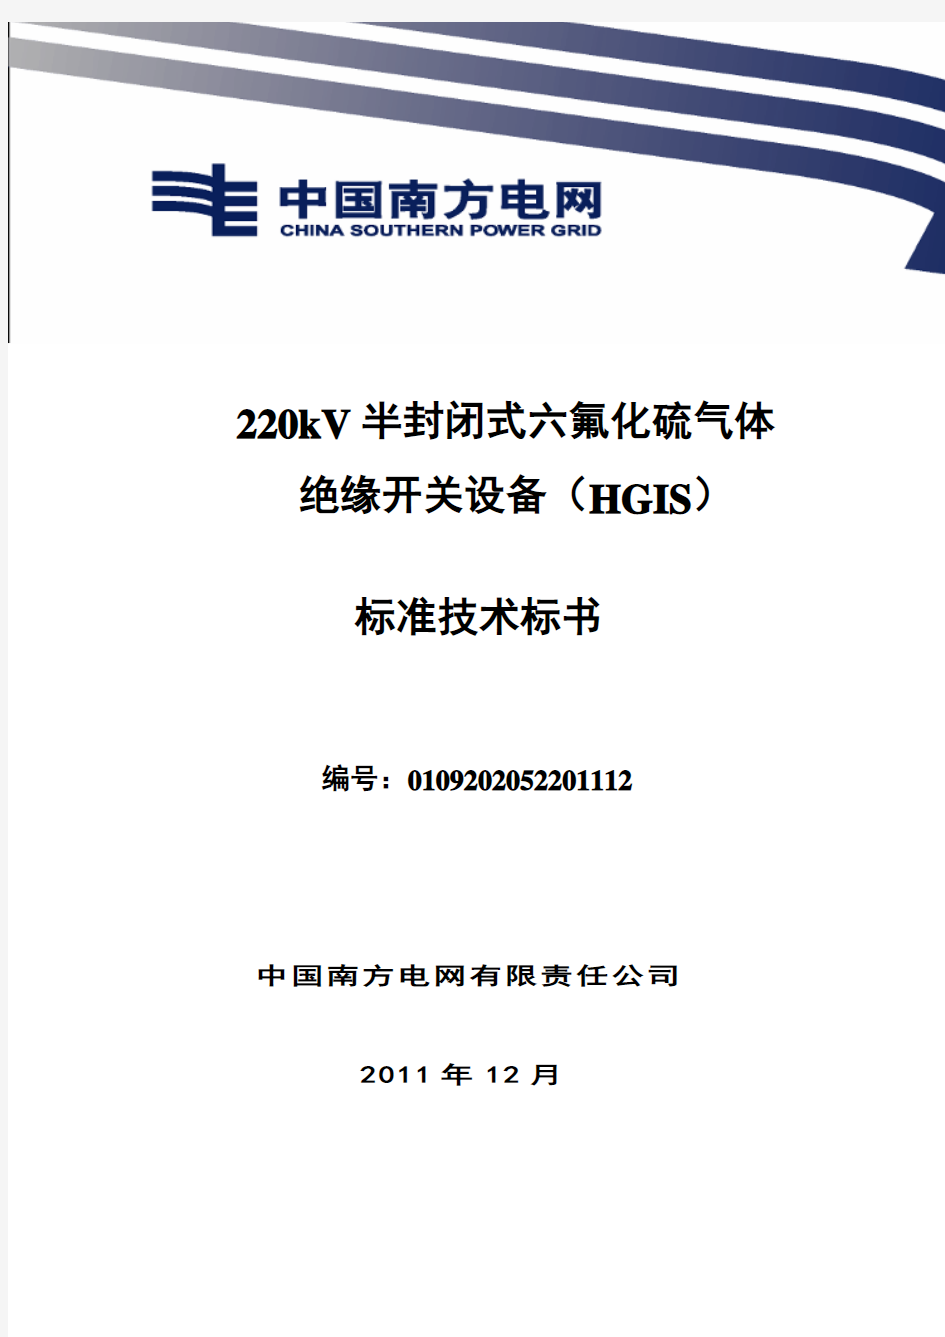 南方电网设备标准技术标书-220kV 组合电器(HGIS)标准技术标书